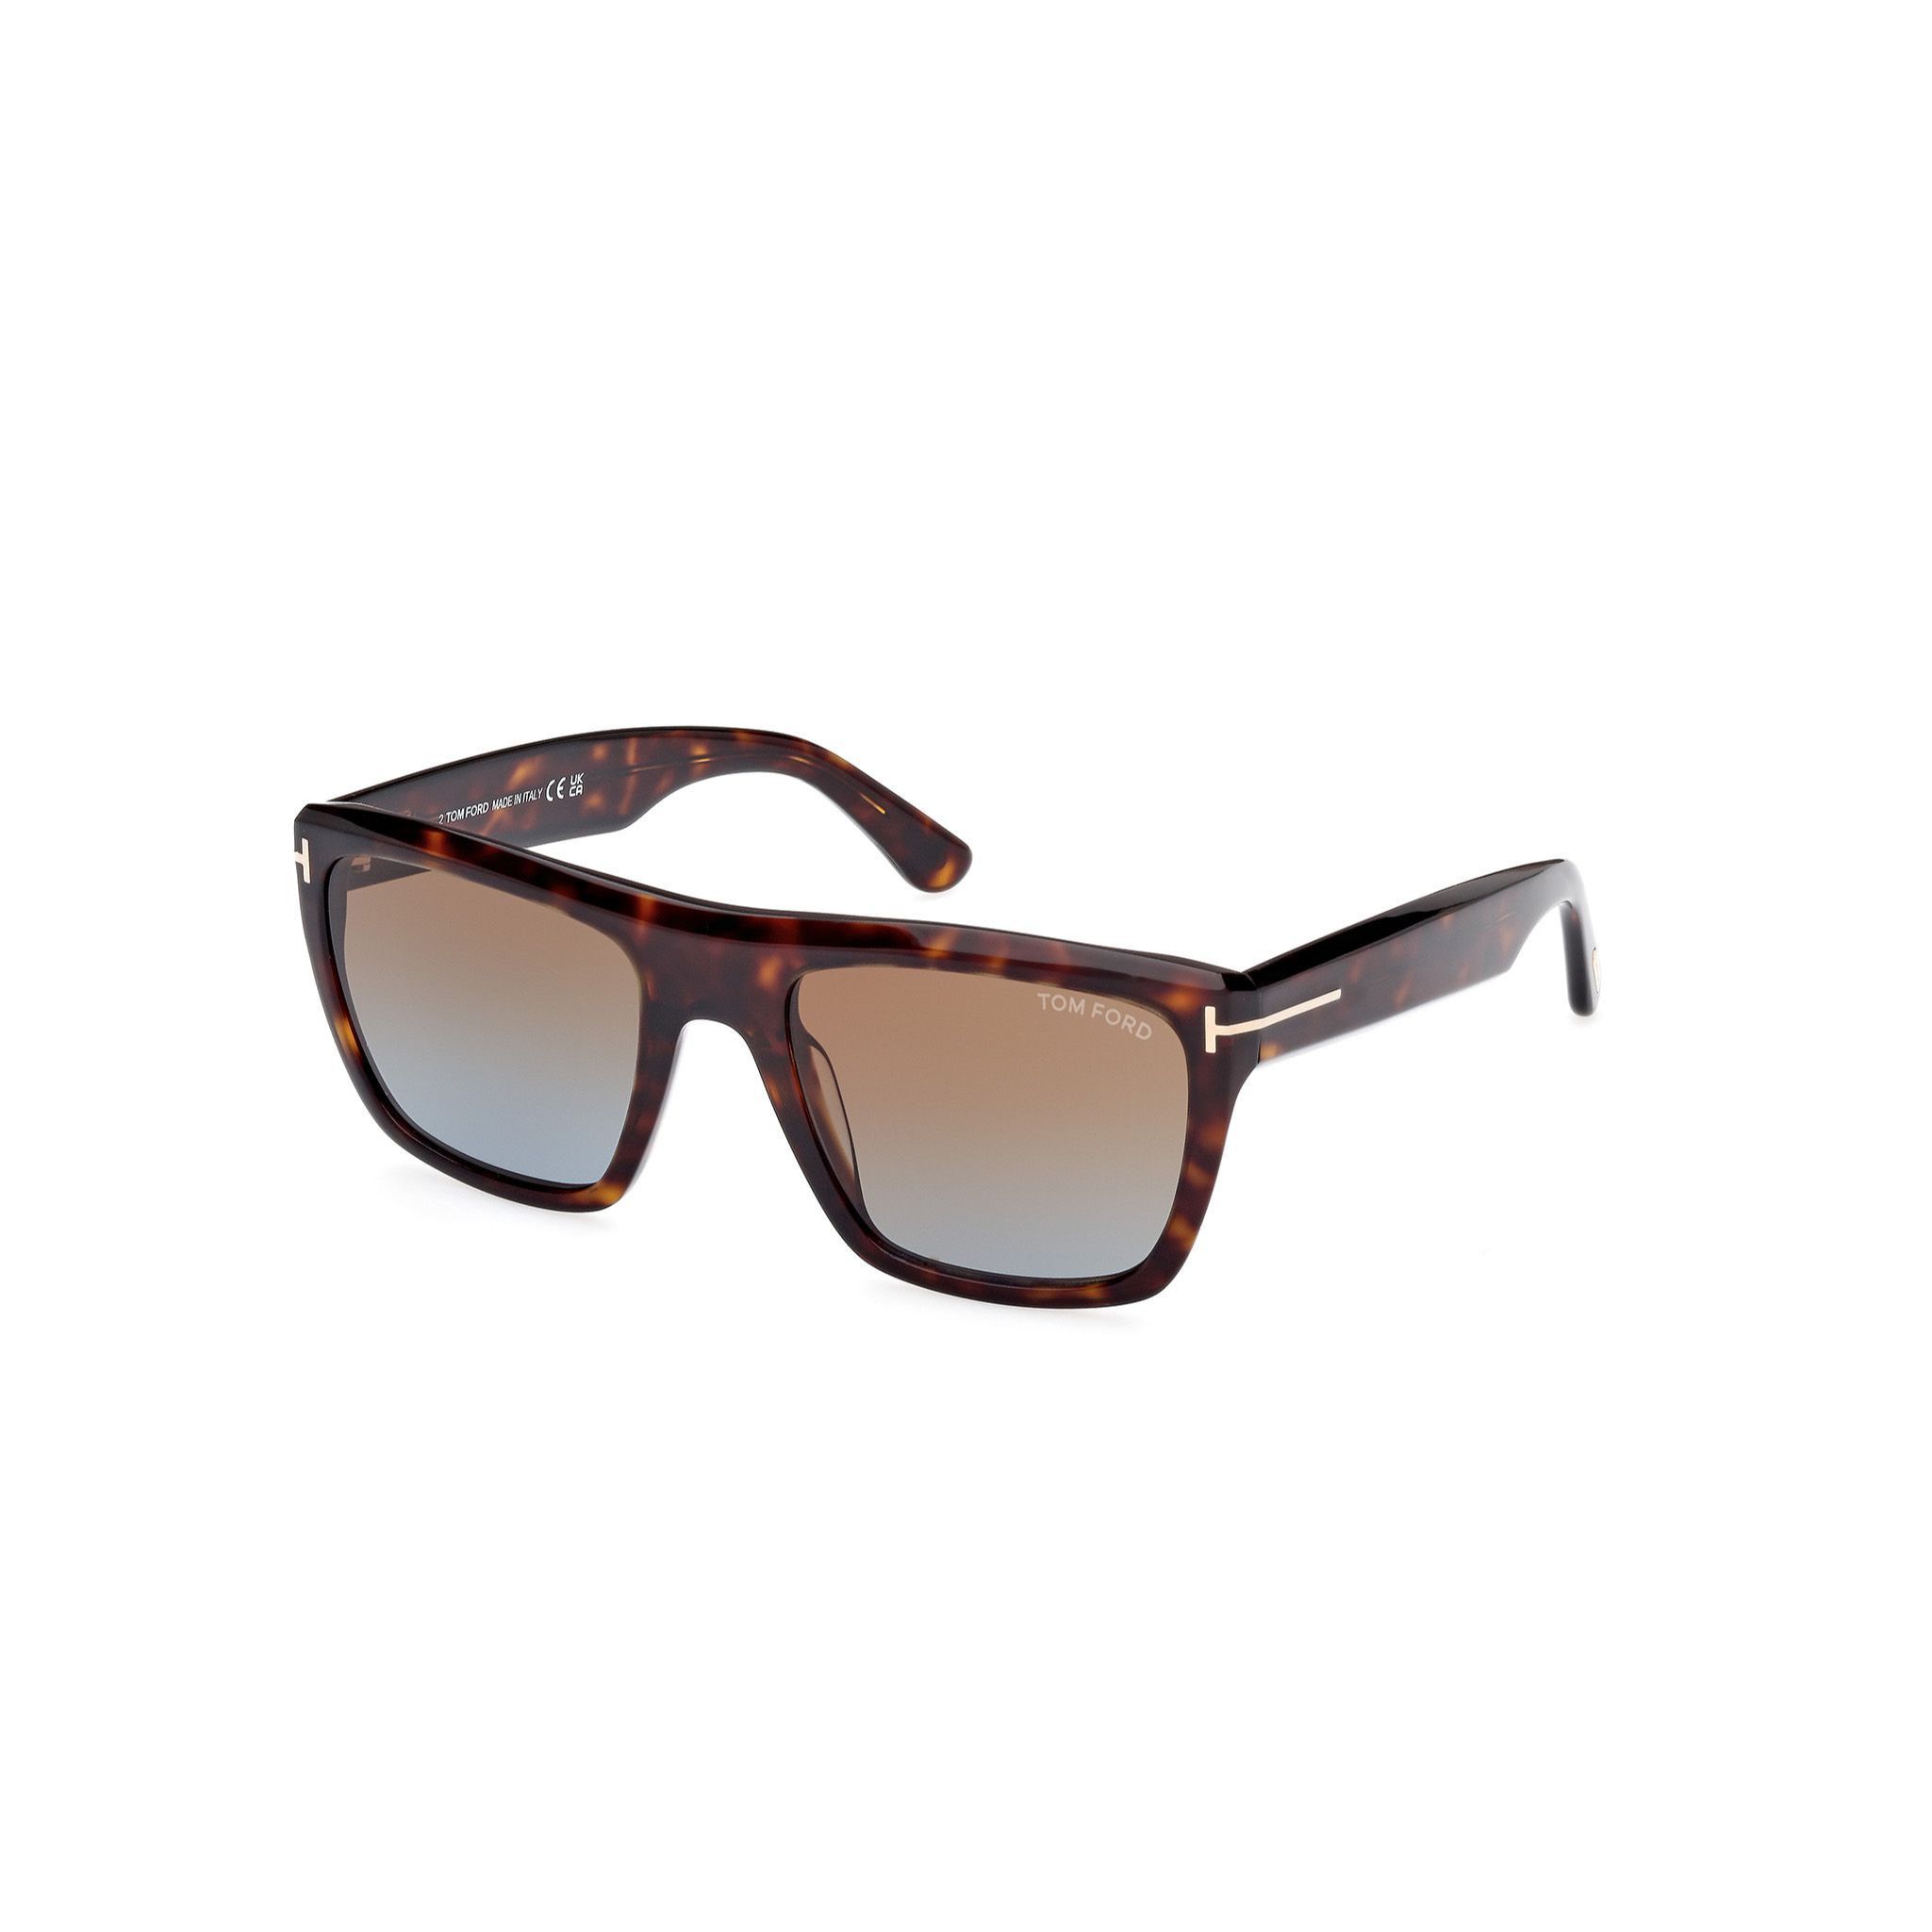 Alberto Sunglasses FT1077  52F - size 55